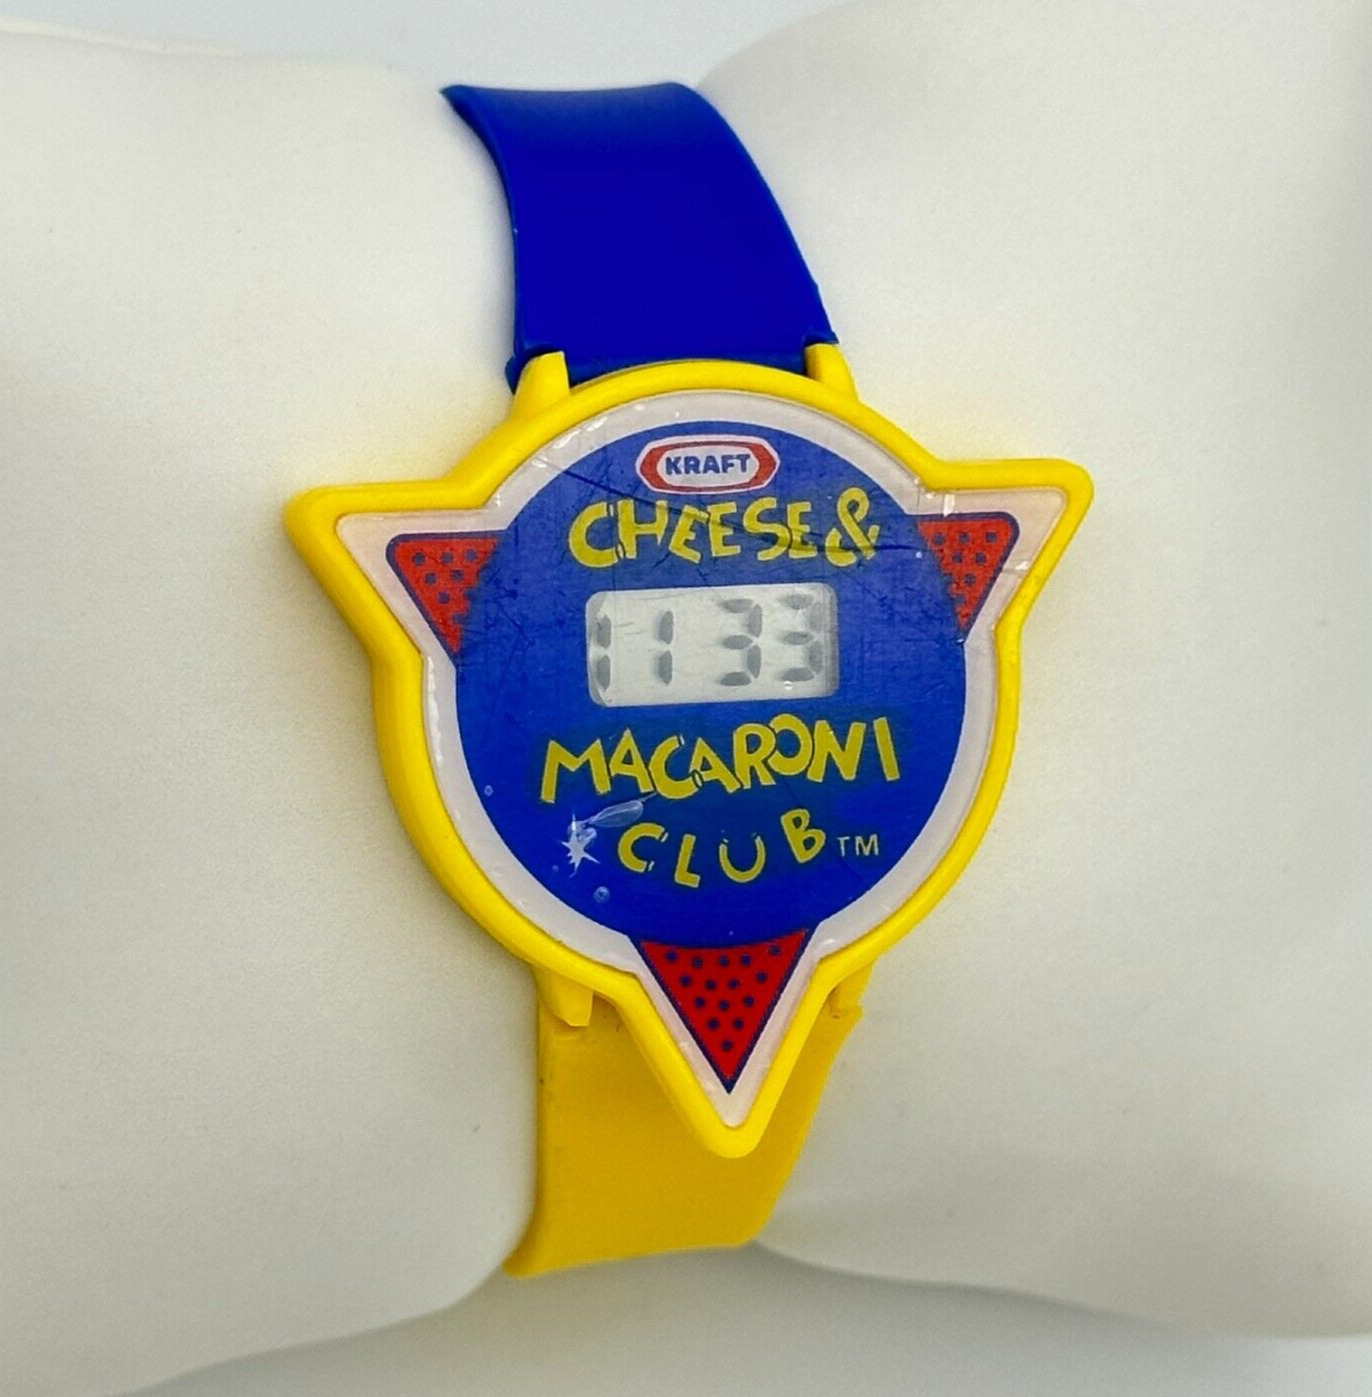 Vintage 1990 KRAFT Cheese & Macaroni Club Digital LCD Watch - Unworn, Working